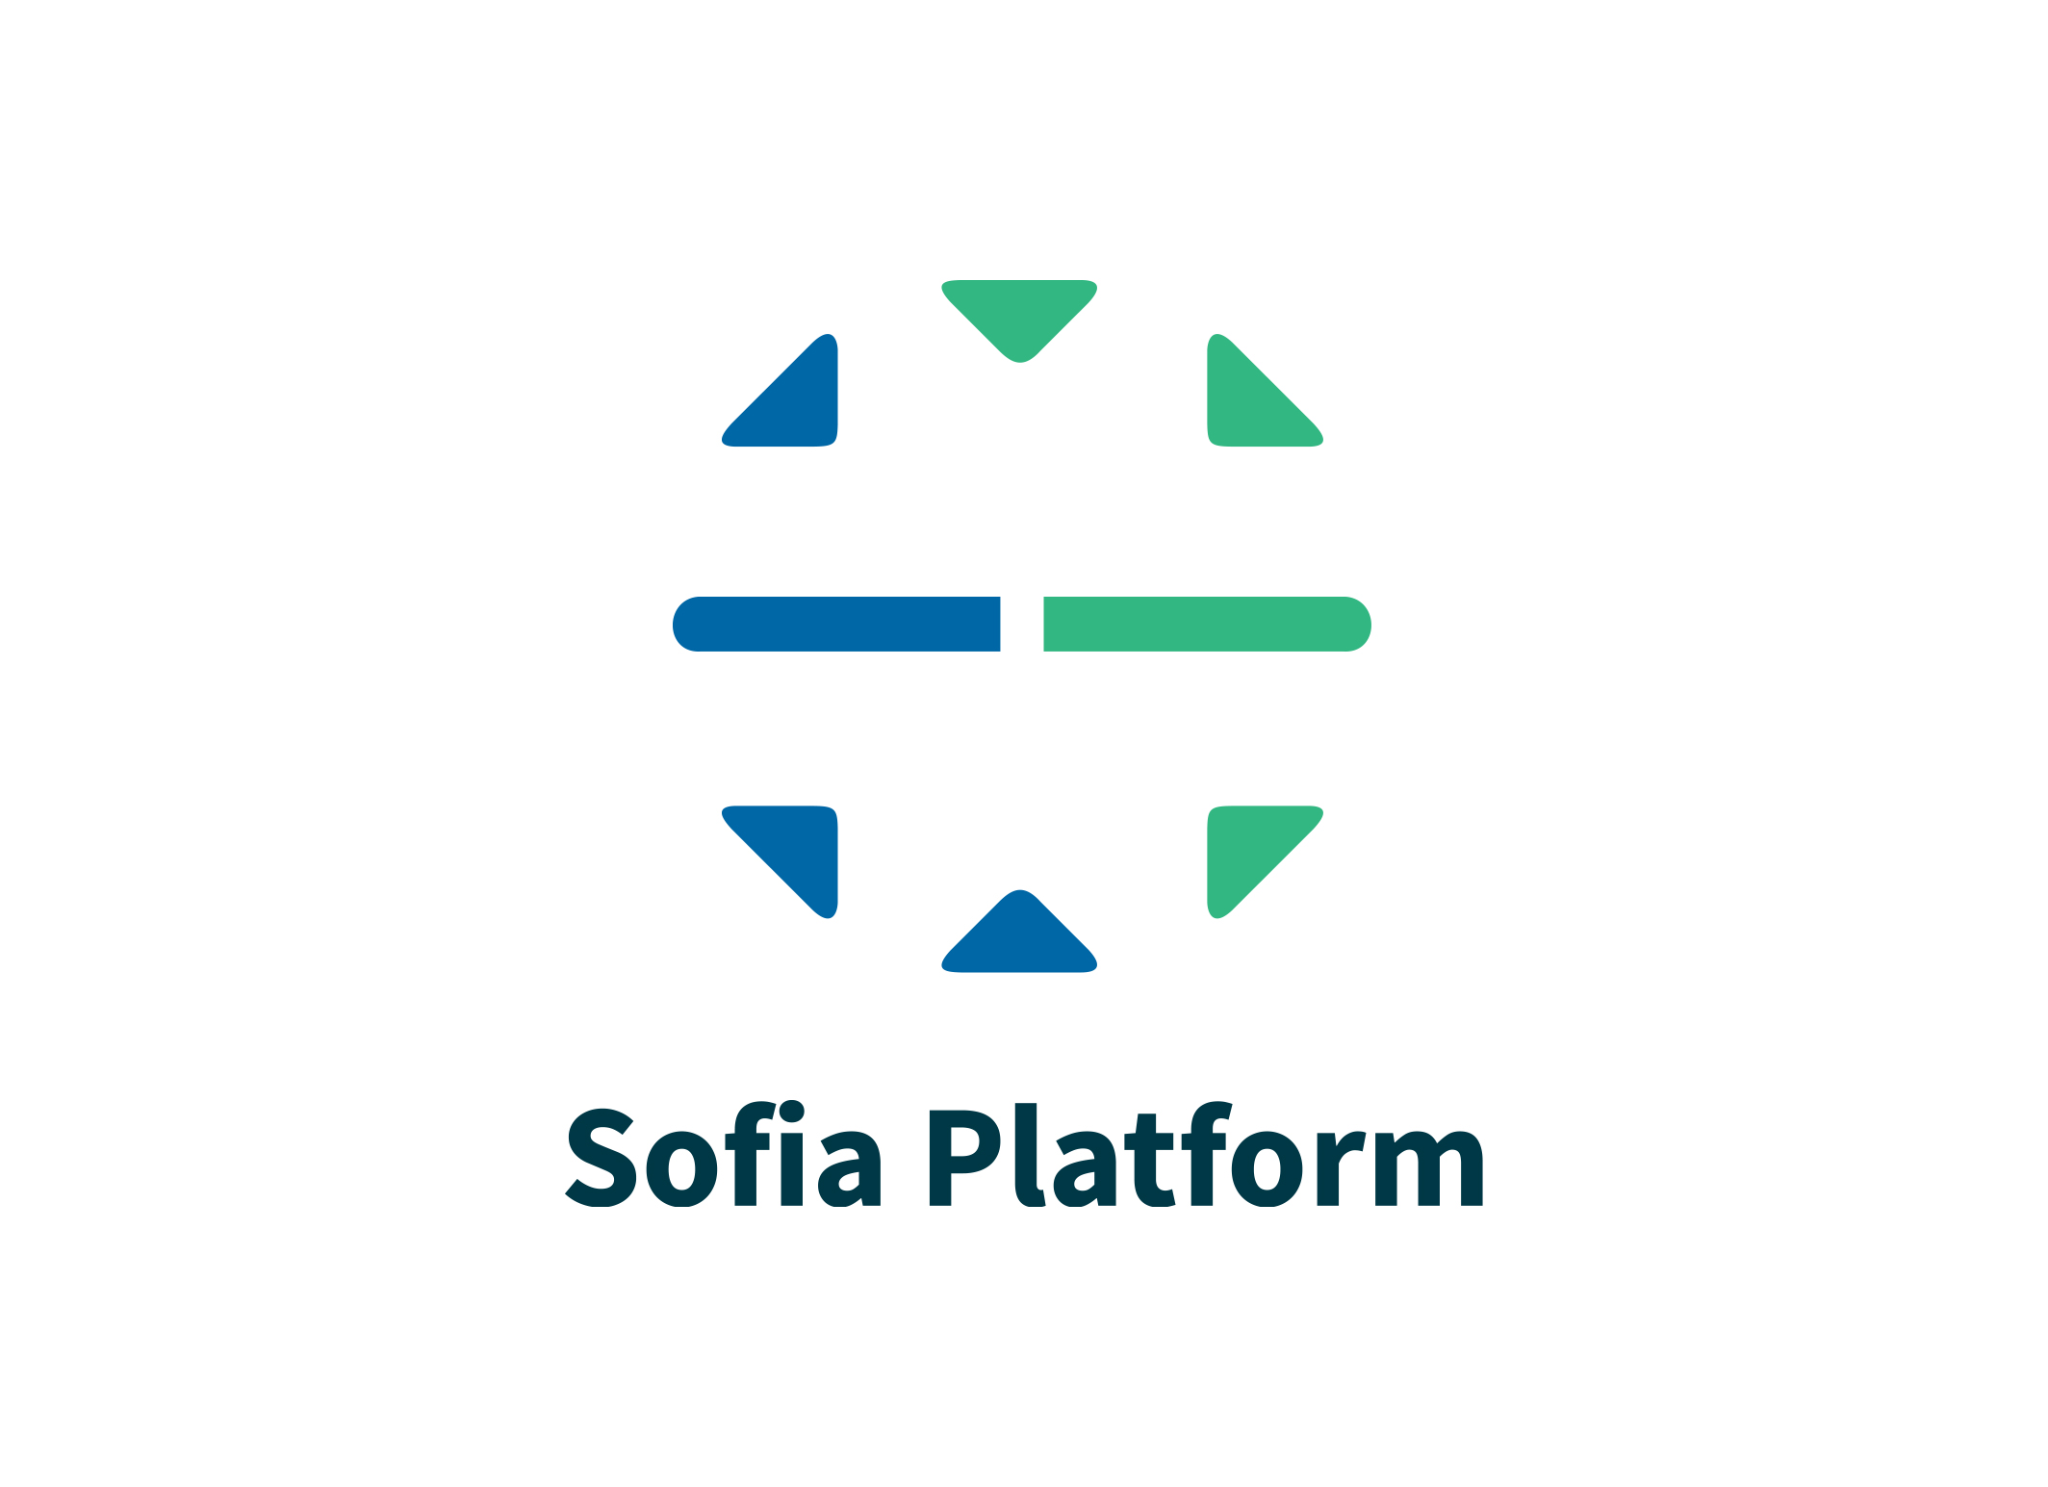 Sofia Platform (BG)